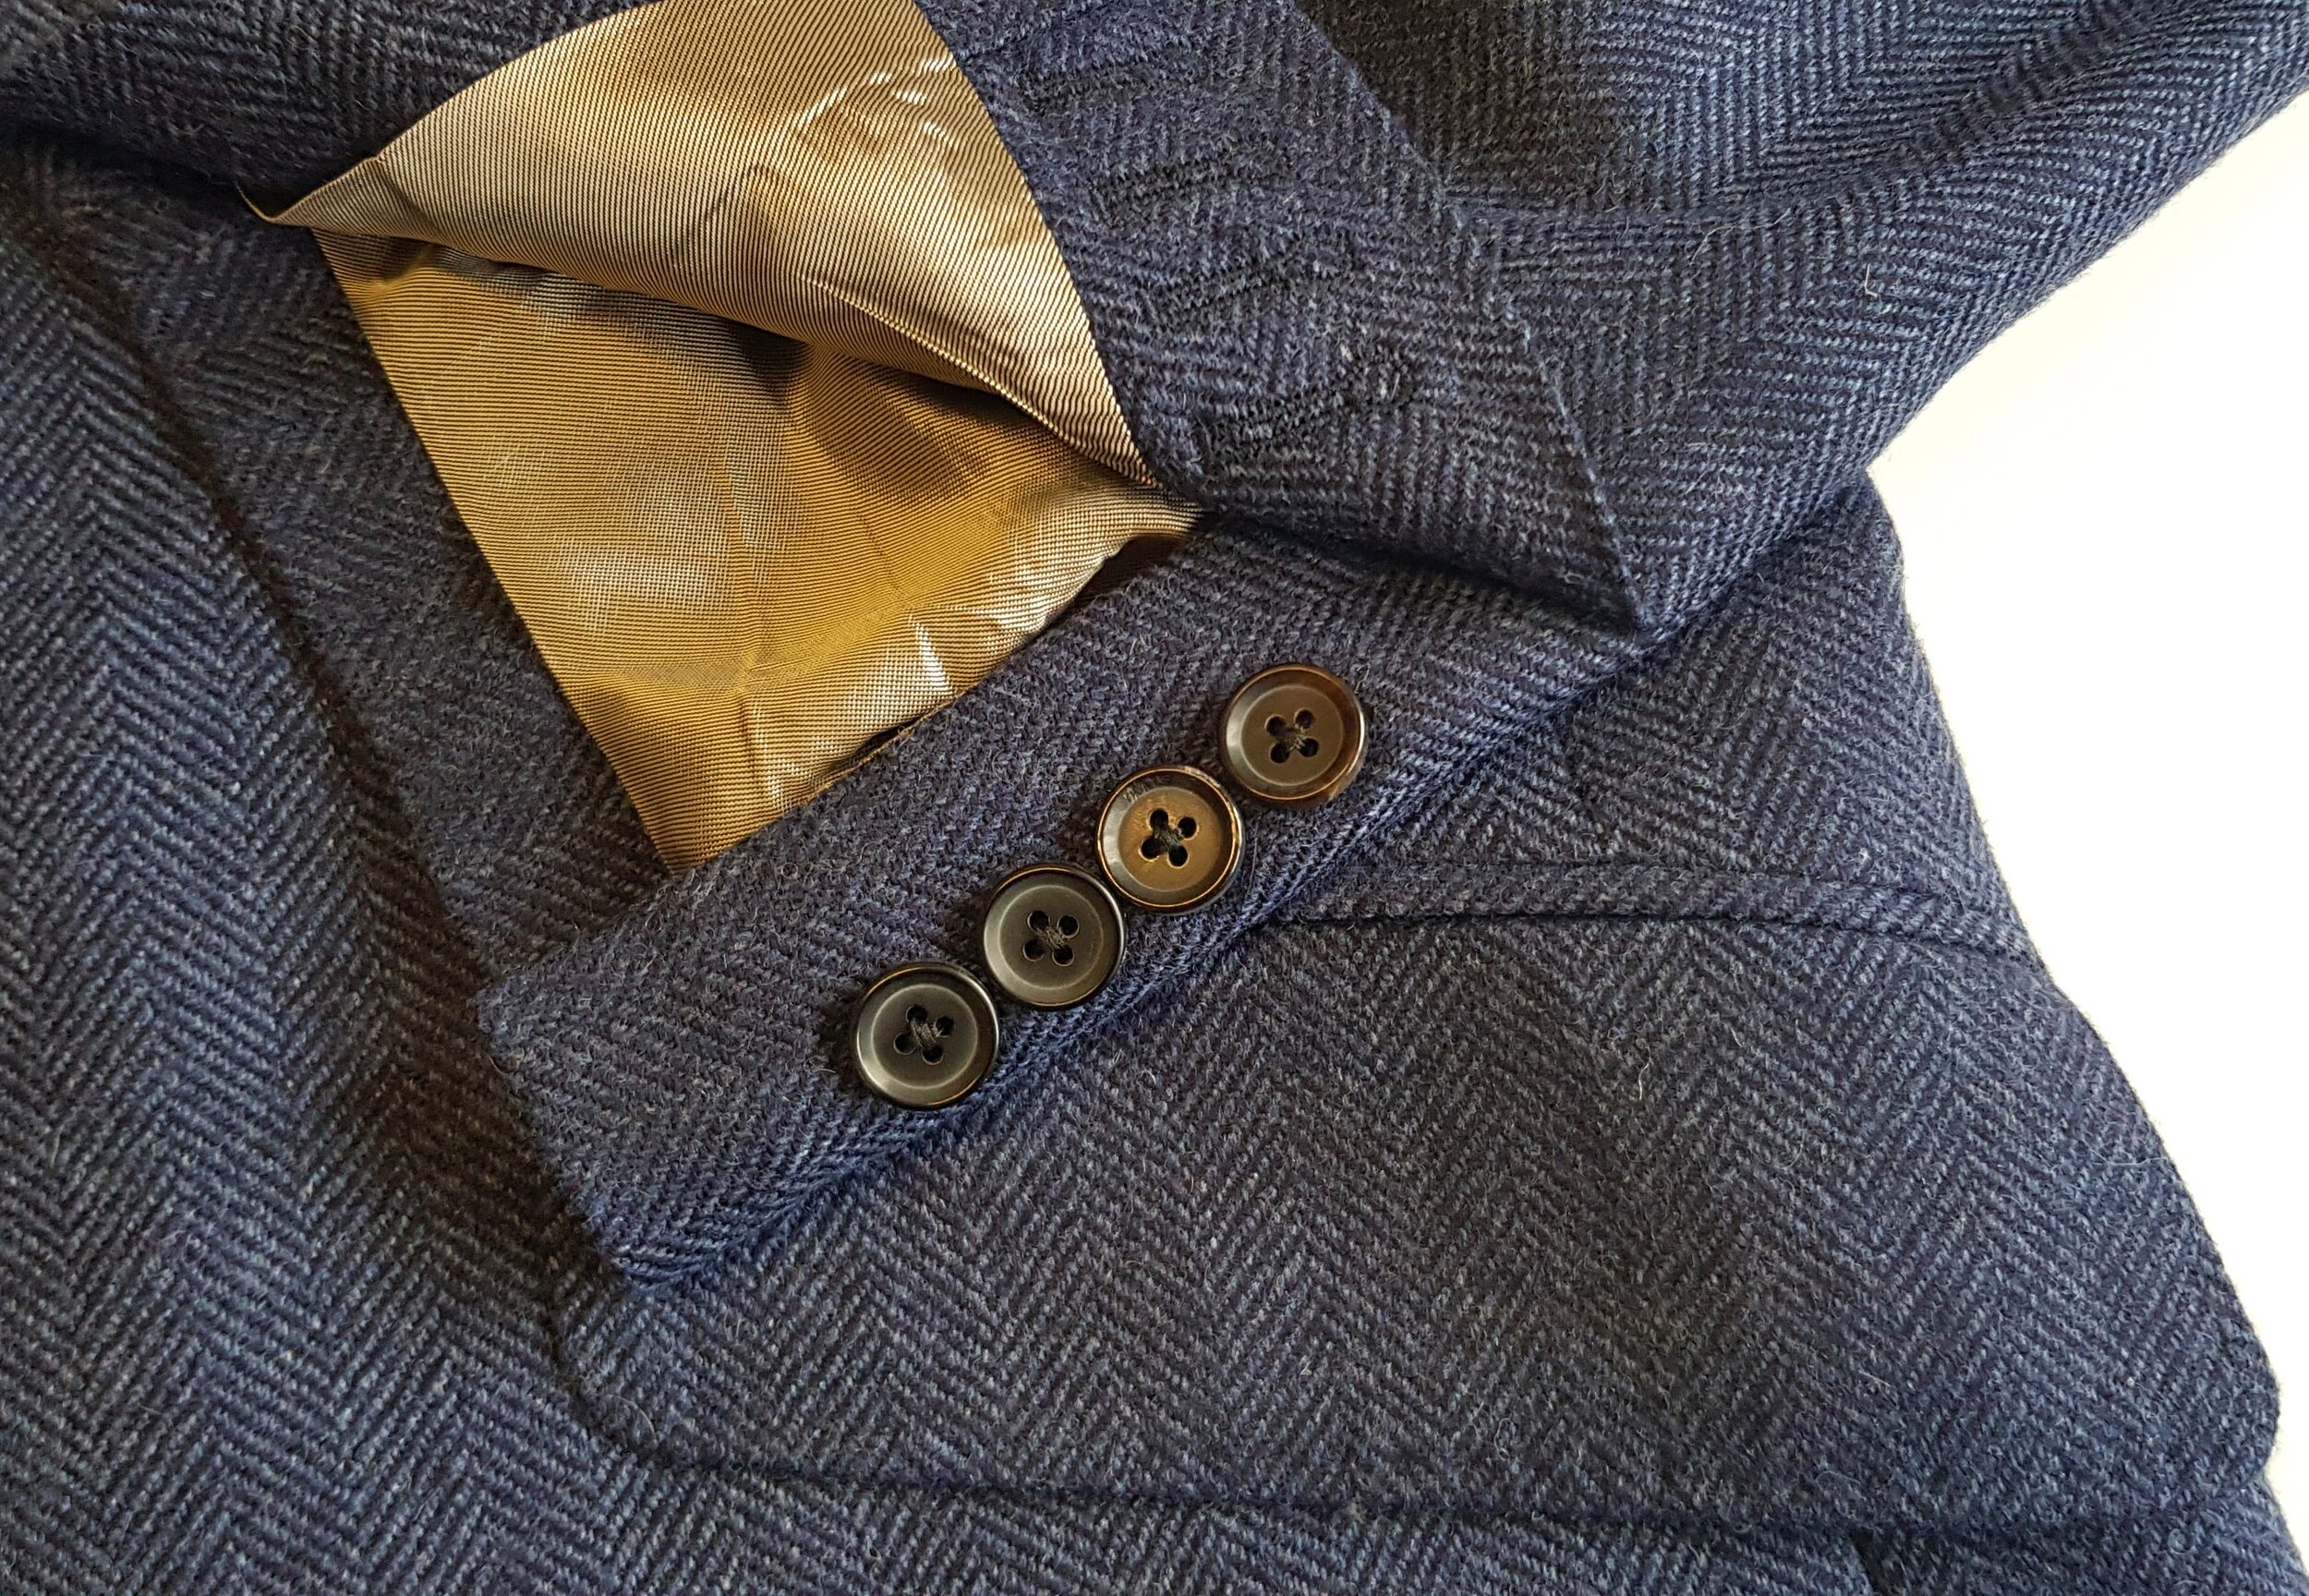 3 Piece Wedding Suit in Merino Lambswool Herringbone Tweed — TWEED ADDICT